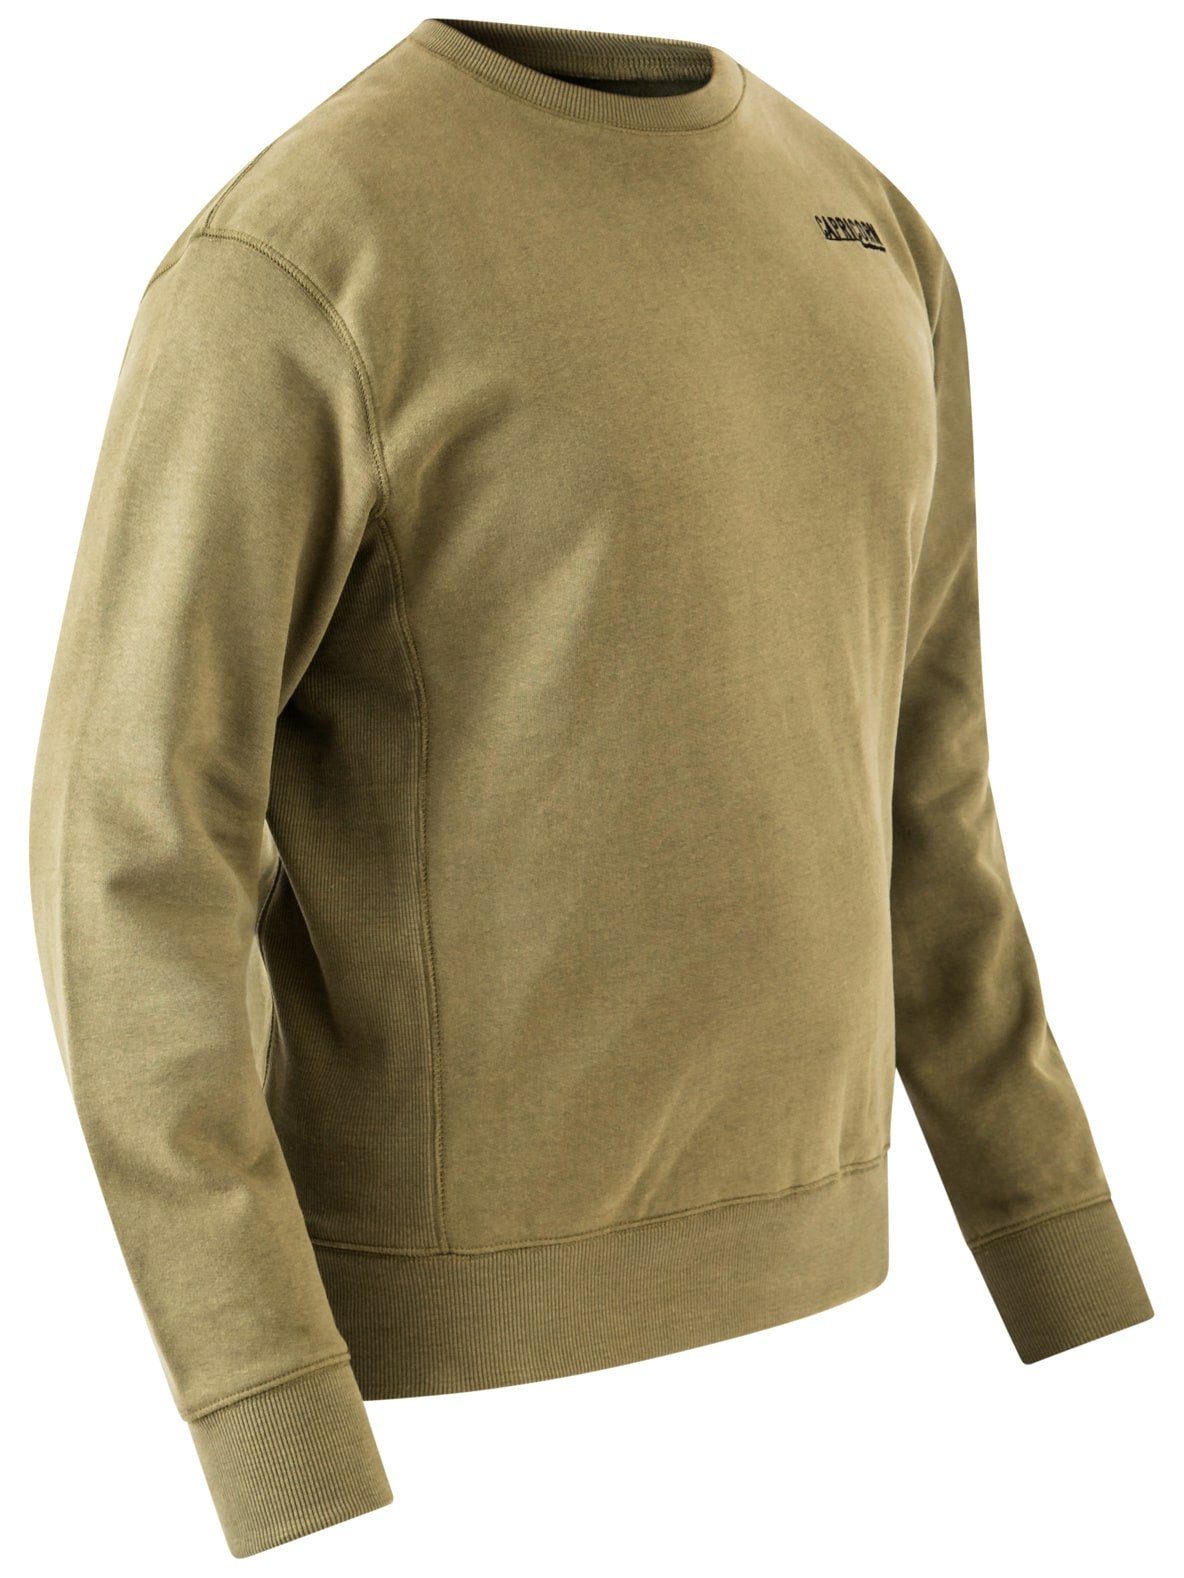 Sweatshirt olivgrün Größe bis Rippstoff, Capricorn 5XL seitlich Bodo eingenähter Rockwear